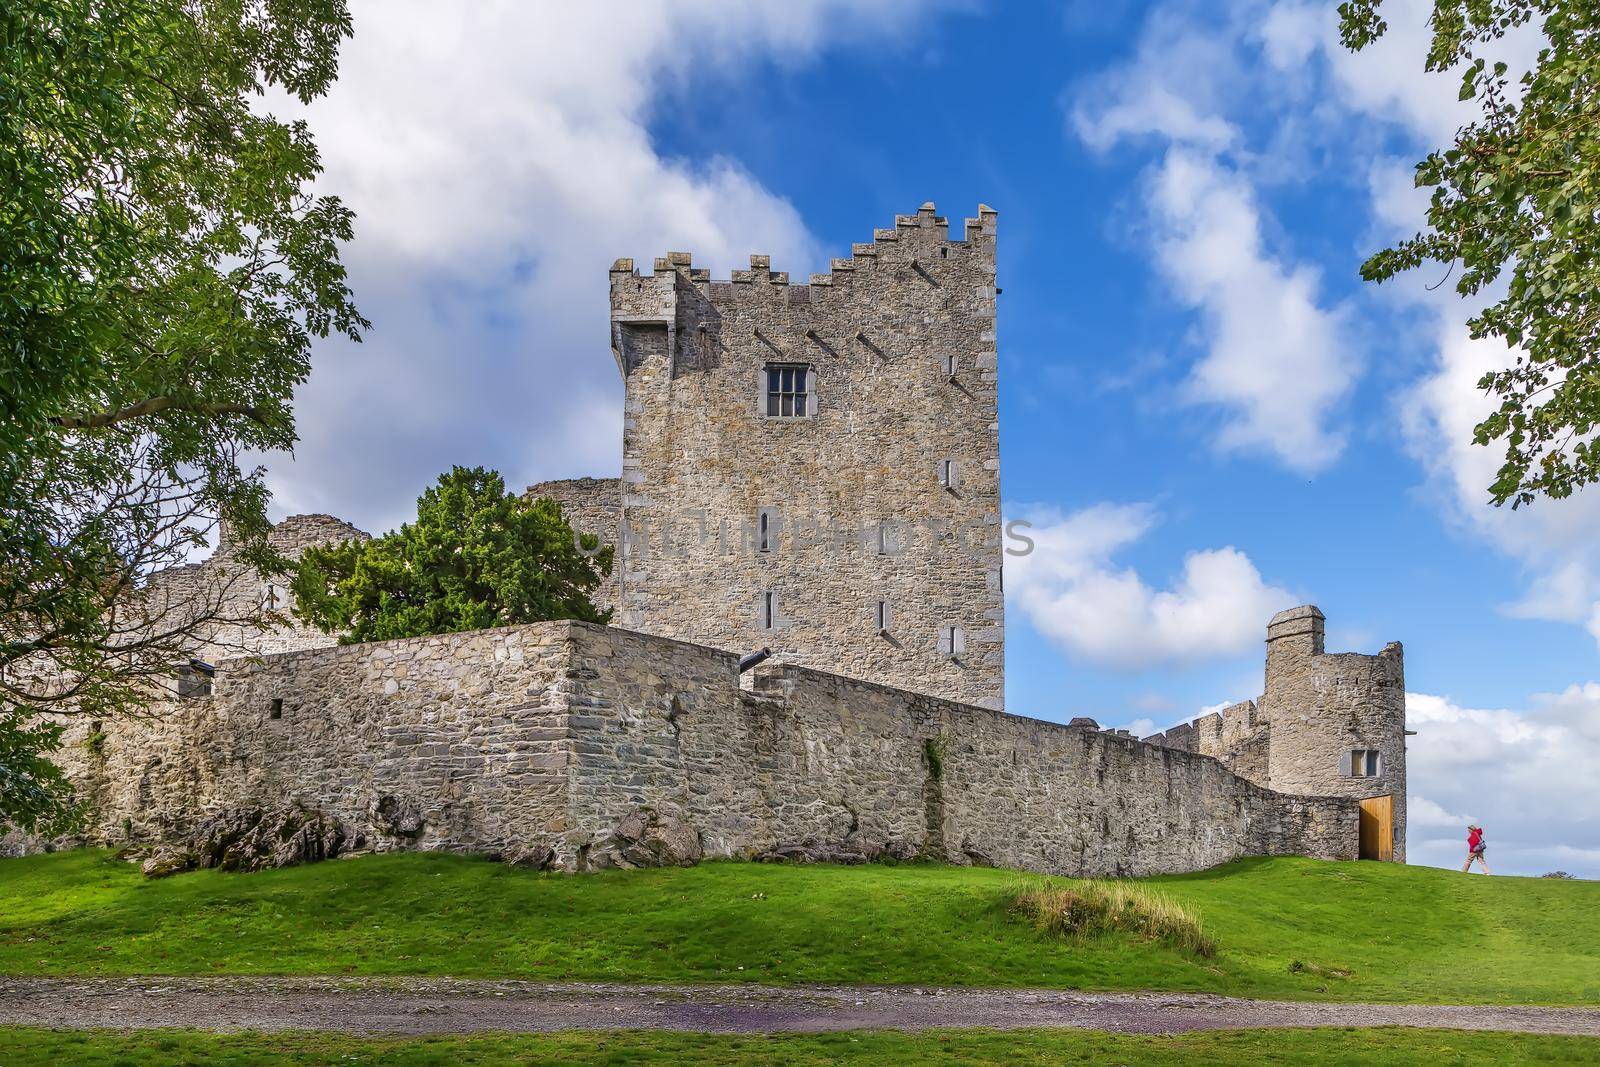 Ross Castle, Ireland by borisb17